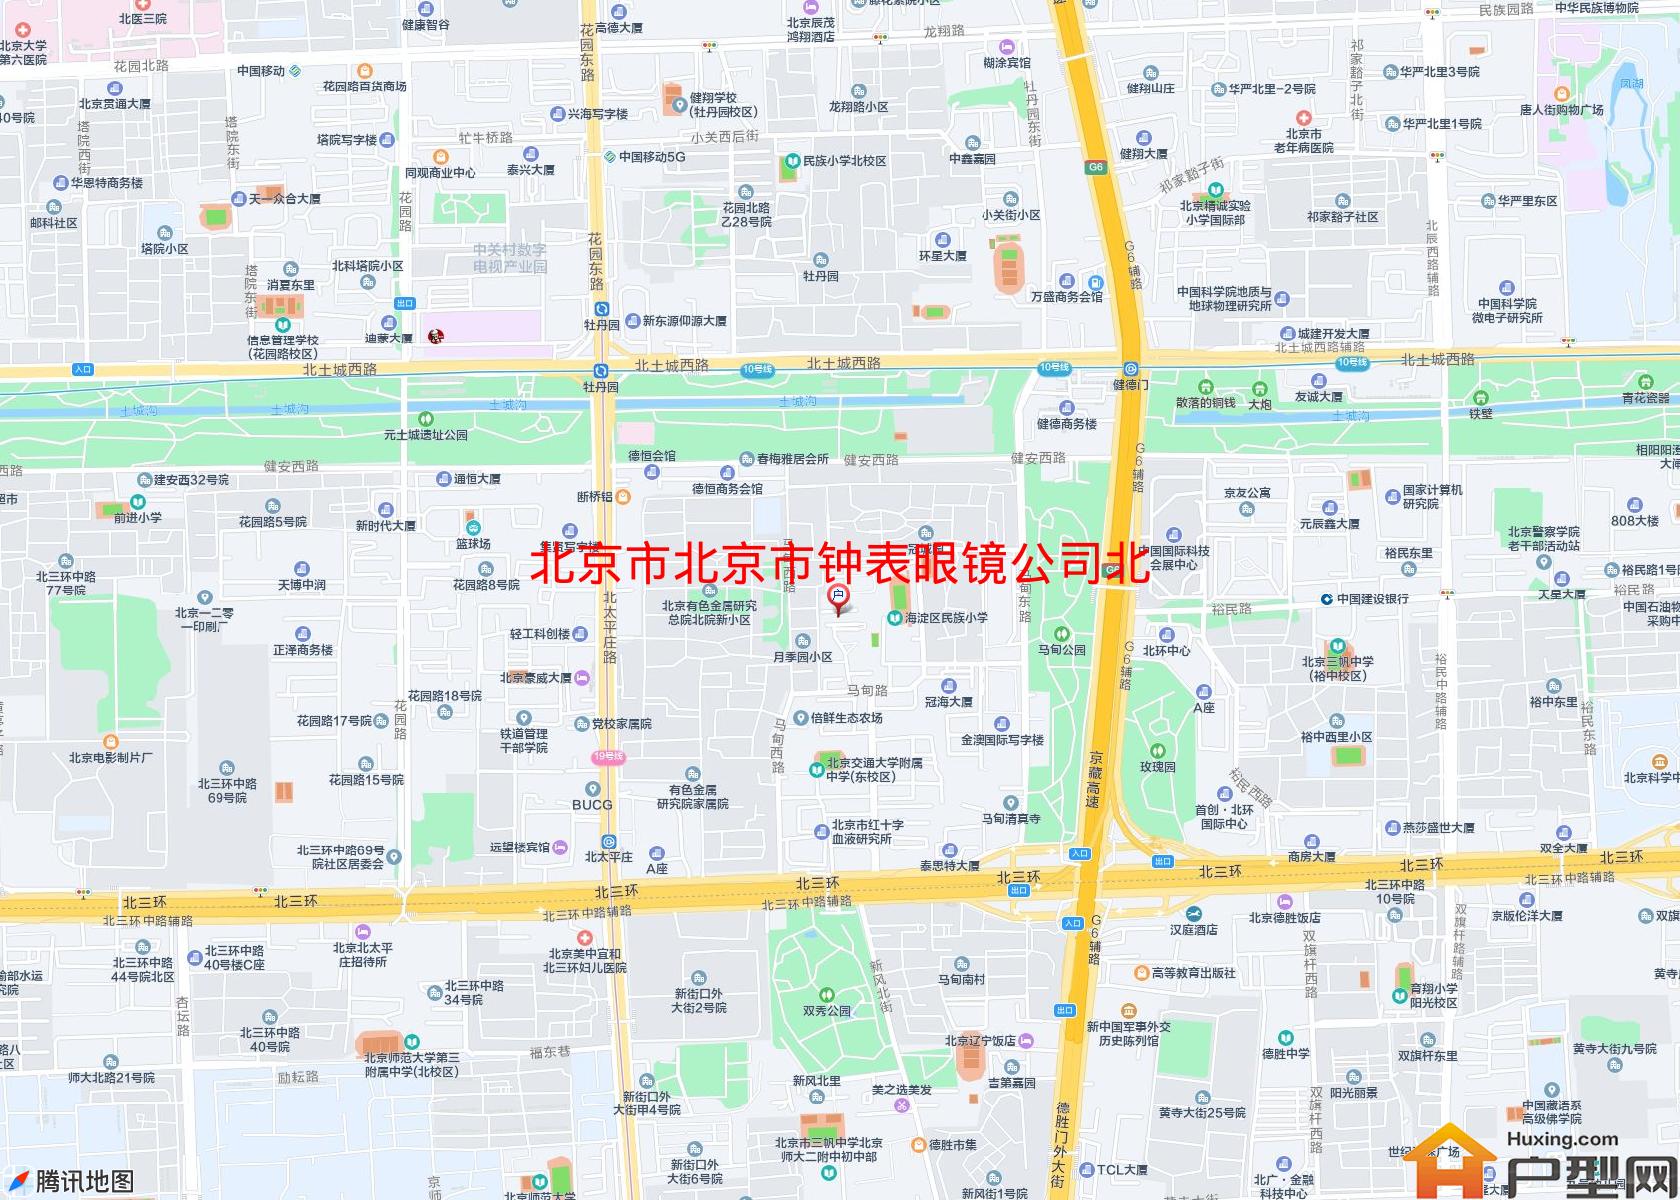 北京市钟表眼镜公司北院宿舍小区 - 户型网